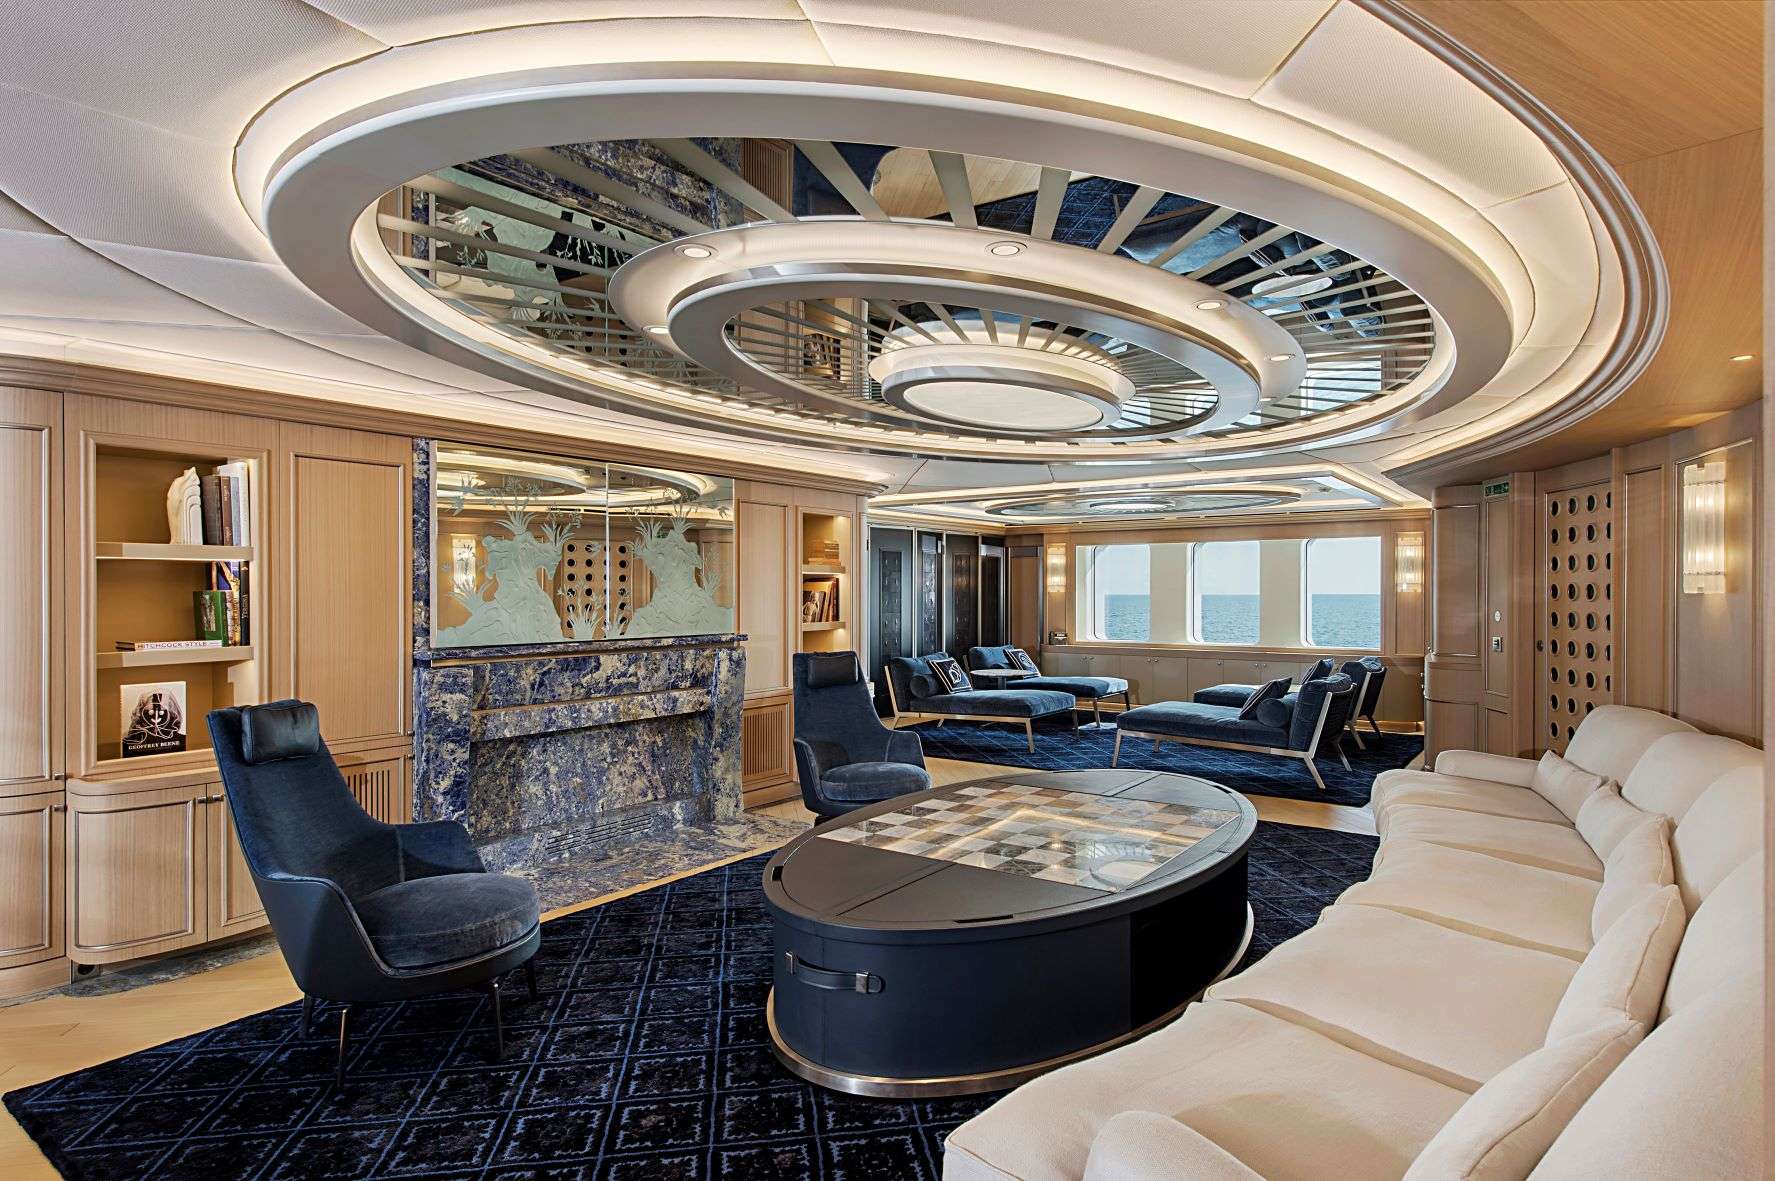 DREAM - Superyacht charter Balearics & Boat hire in Riviera, Cors, Sard, Italy, Spain, Turkey, Croatia, Greece 2